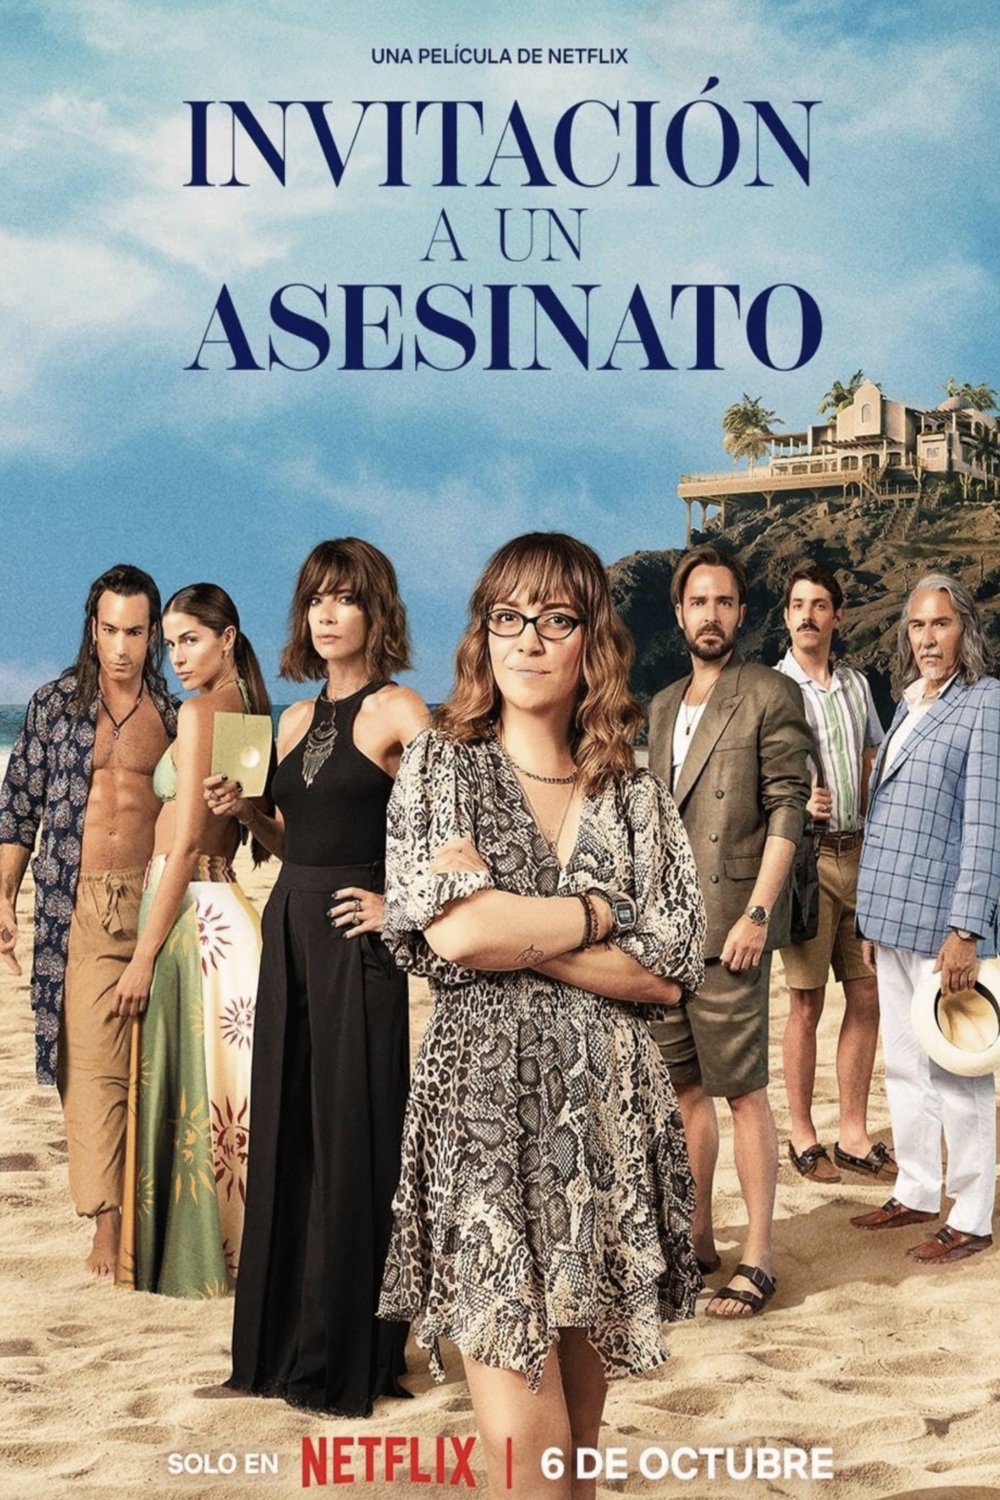 Spanish poster of the movie Invitación a un Asesinato